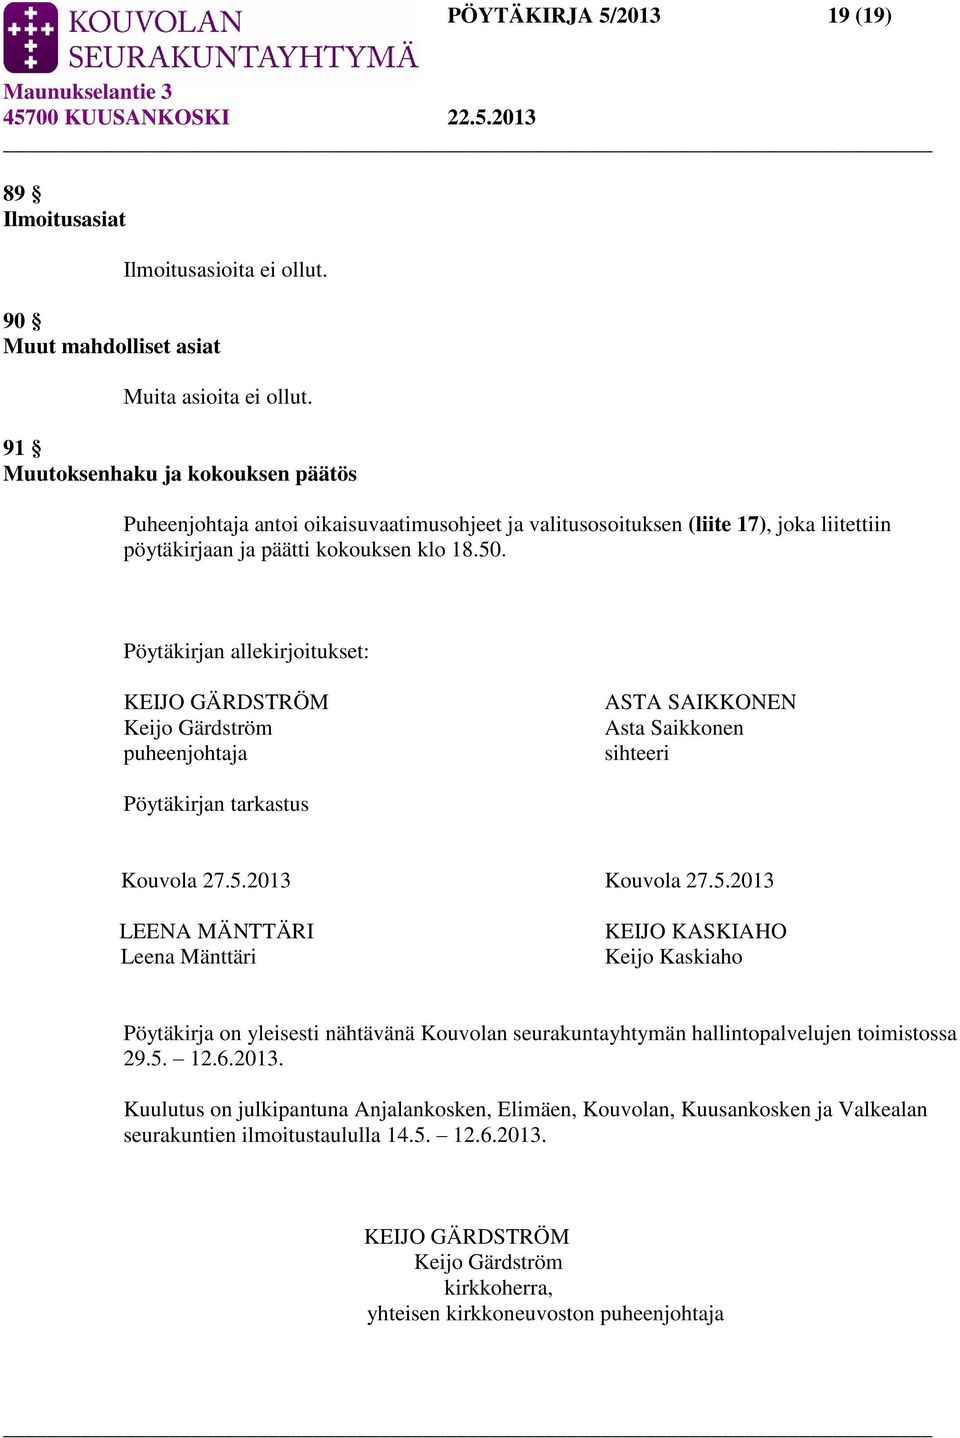 Pöytäkirjan allekirjoitukset: KEIJO GÄRDSTRÖM Keijo Gärdström puheenjohtaja ASTA SAIKKONEN Asta Saikkonen sihteeri Pöytäkirjan tarkastus Kouvola 27.5.